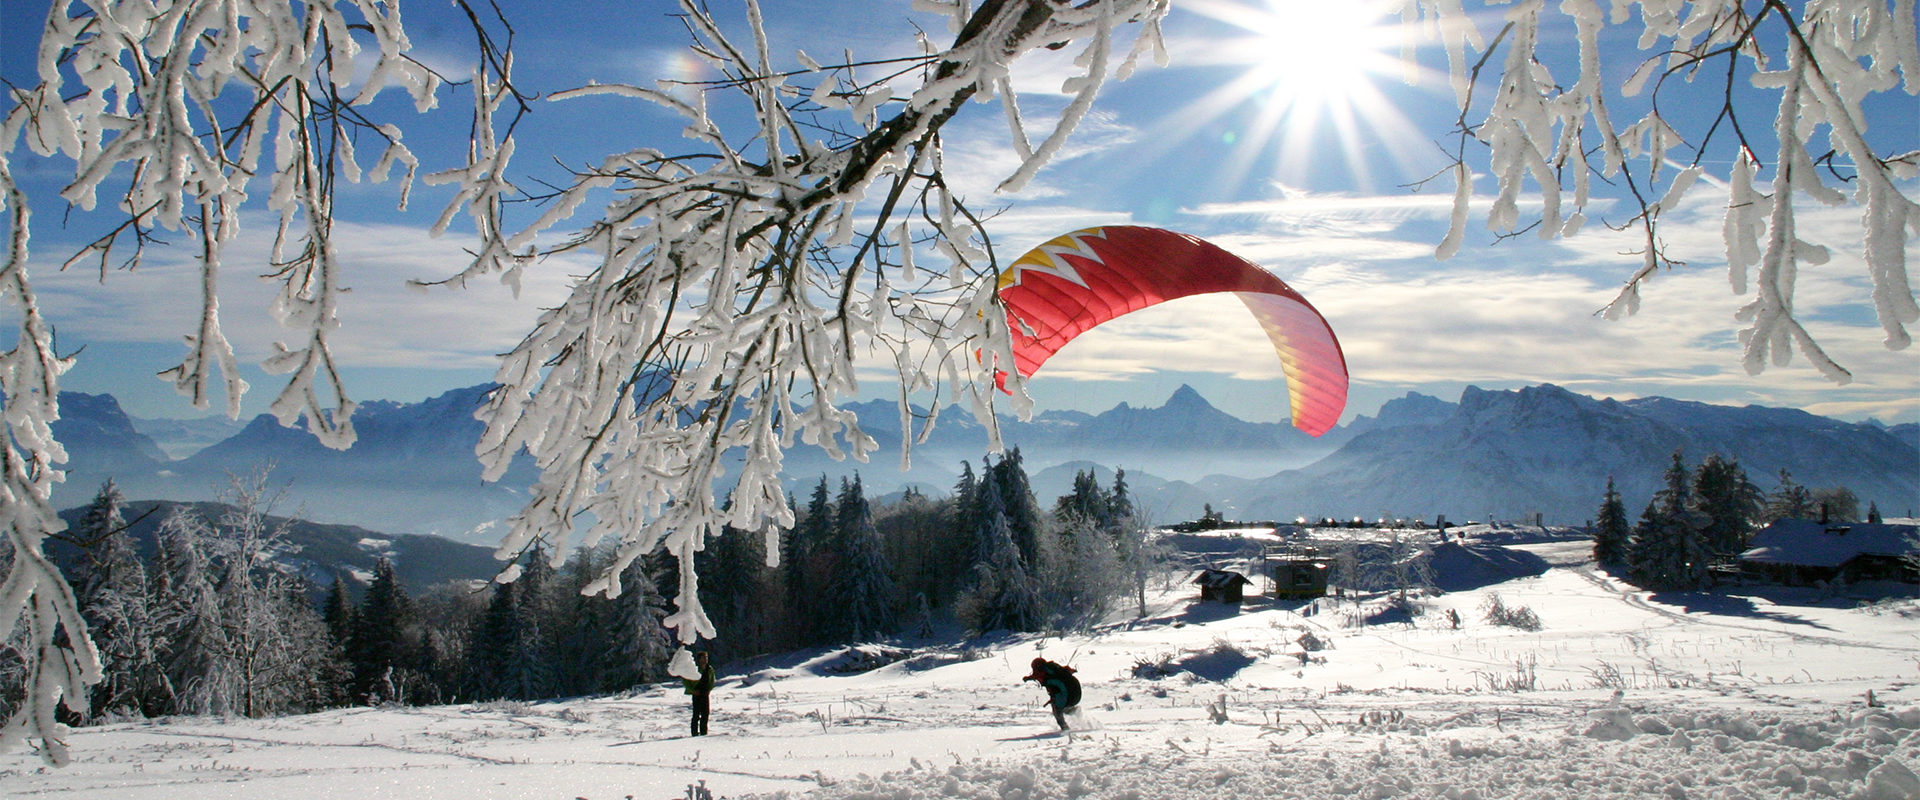 In einer winterlichen Landschaft und bei Sonnenschein wird am Gaisberg ein roter Gleitschirm aufgezogen.